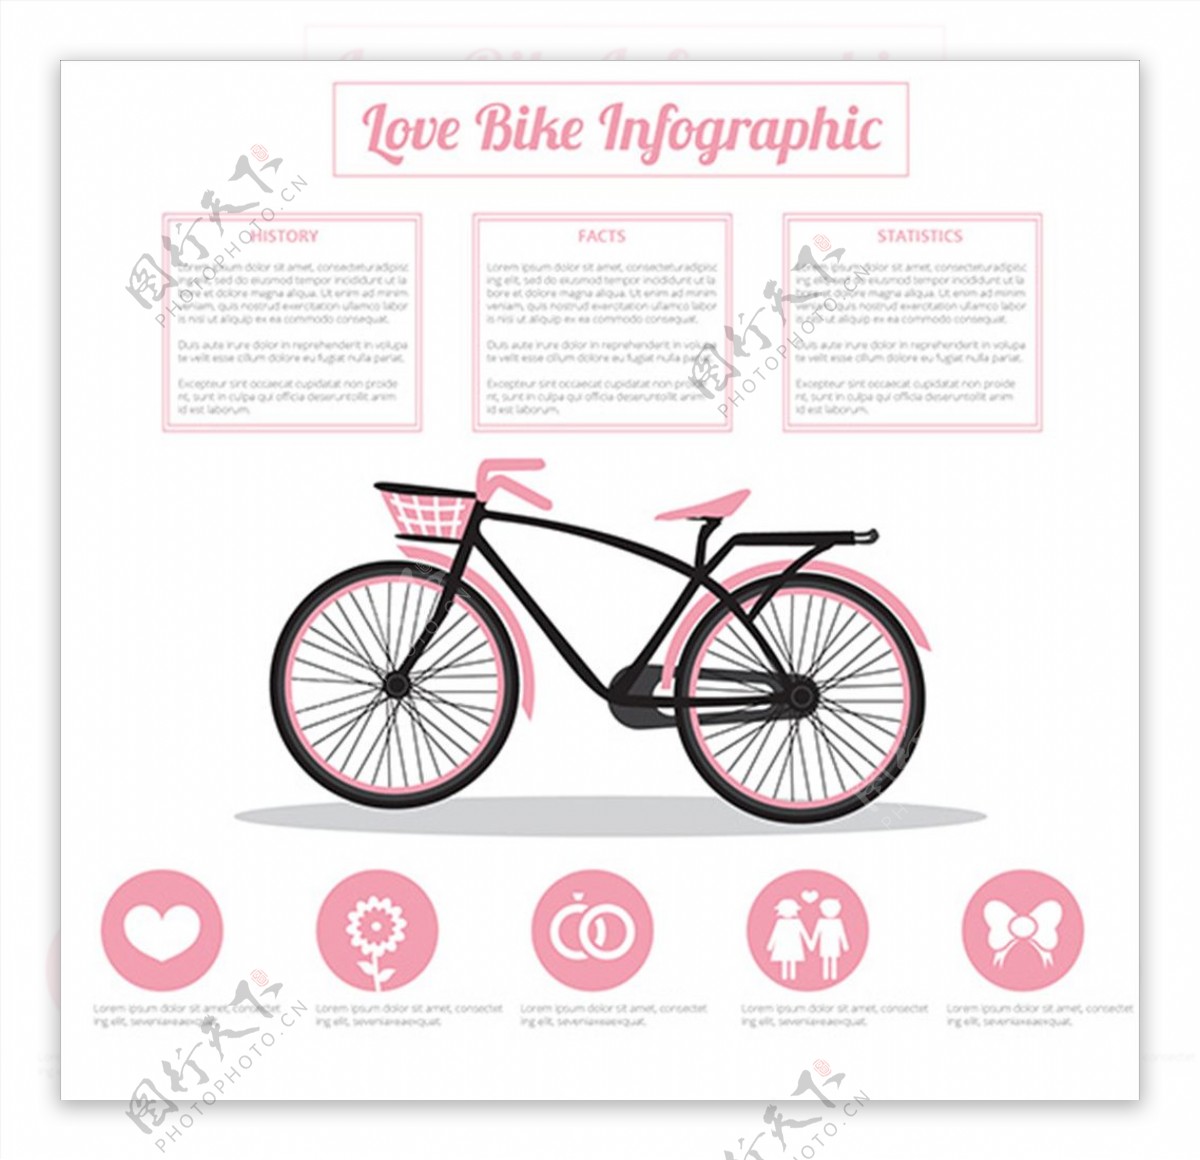 卡通自行车运动信息图表